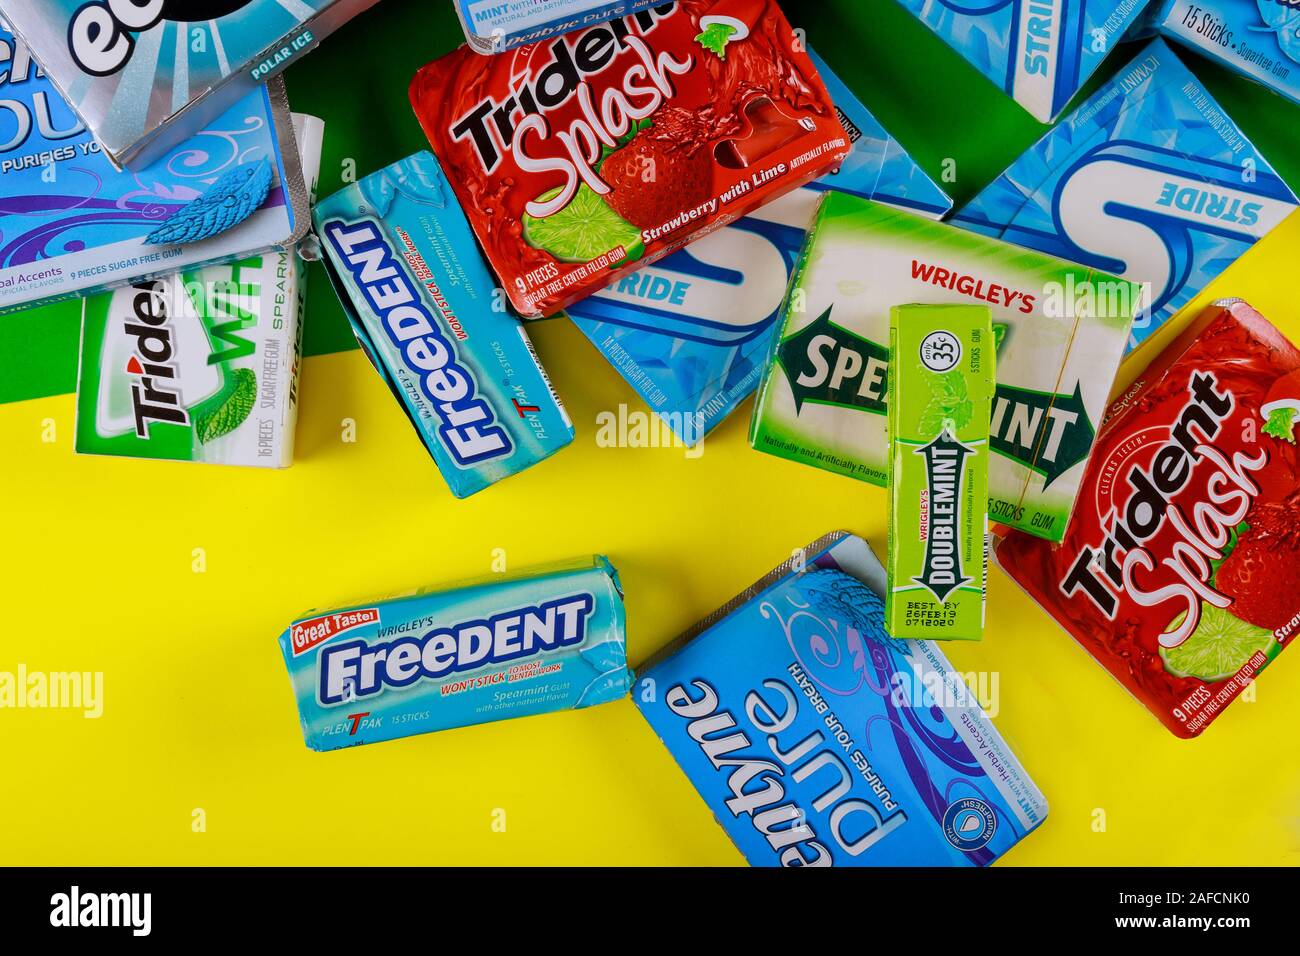 New York NY 29 NOV 2019 : Diverses marques marques de chewing-gum Orbit, Extra, Eclipse, Freedent, Wrigley, menthe verte, Trident, pas beaucoup de paquets de chewing-gum Banque D'Images